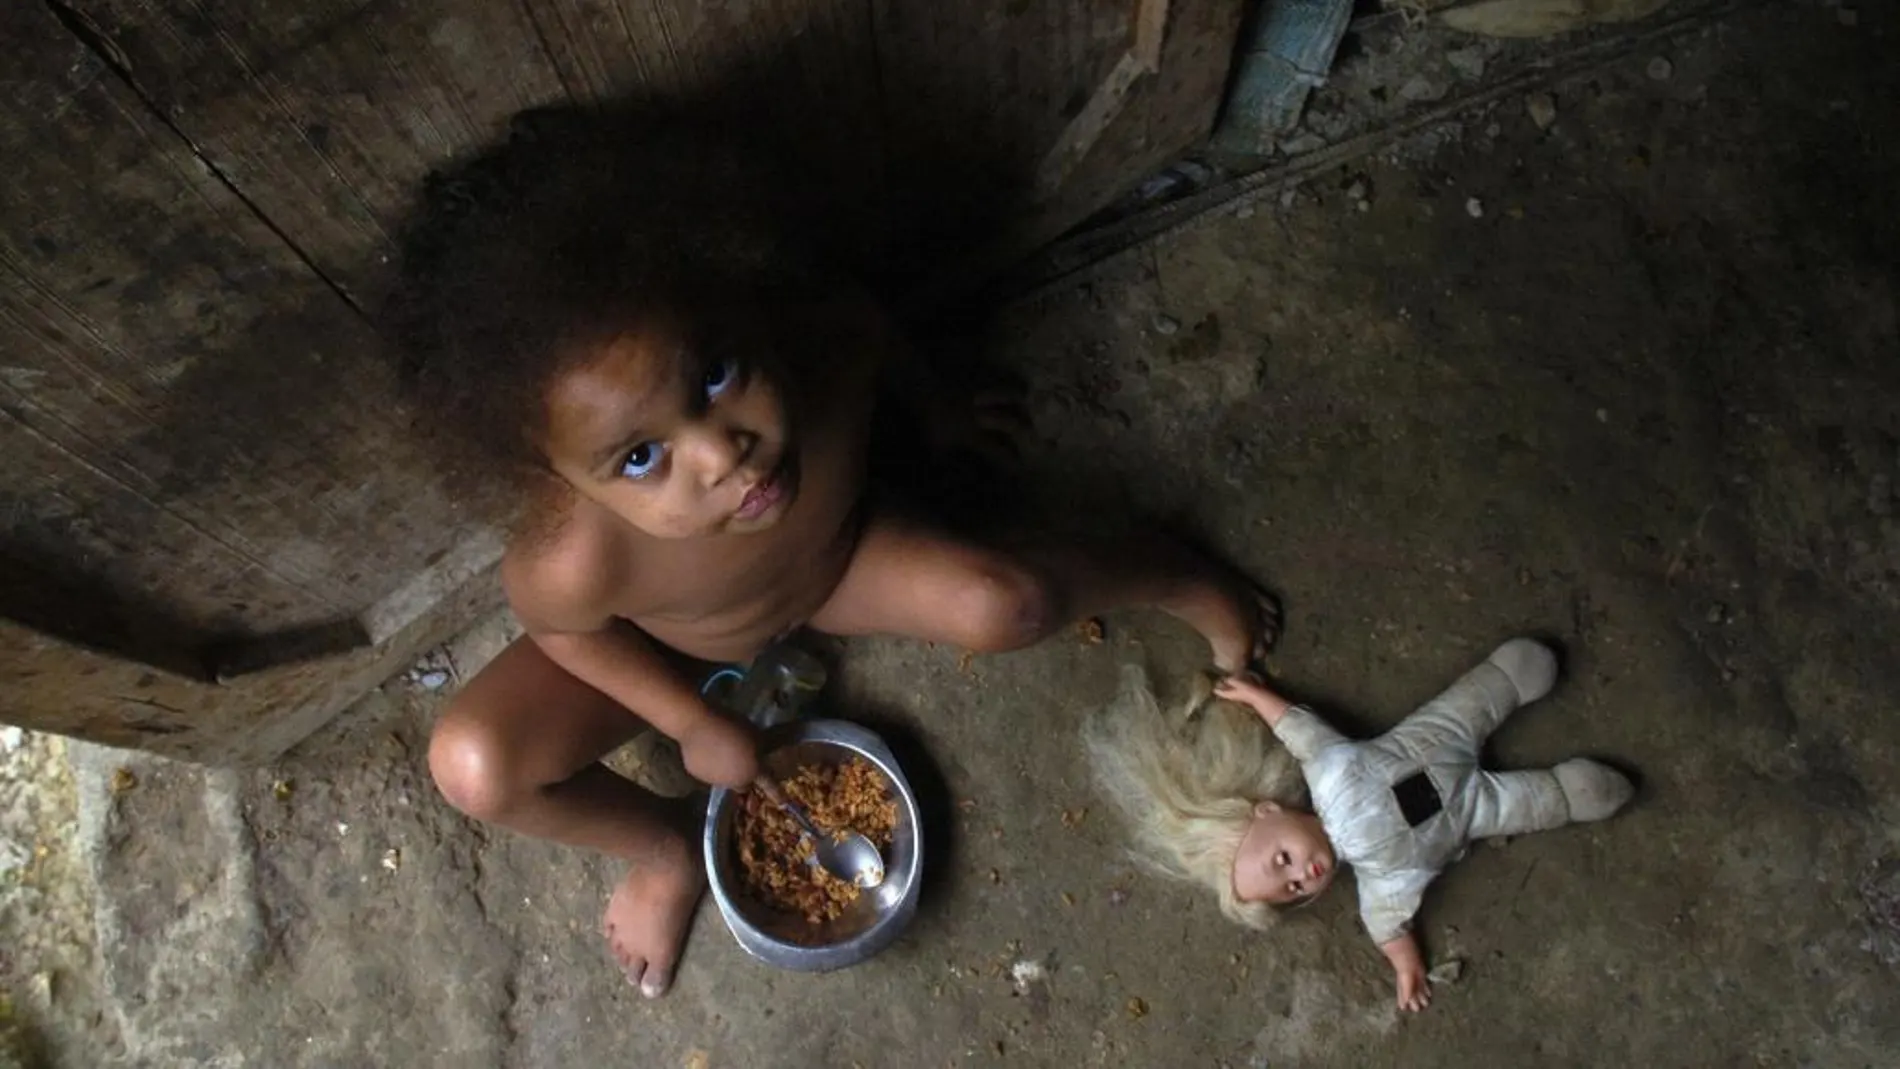 Ana Luisa de 3 años, come un plato de arroz en la puerta de su casa, en el barrio Capotillo, de la capital Dominicana donde el índice de desnutrición infantil es muy elevado